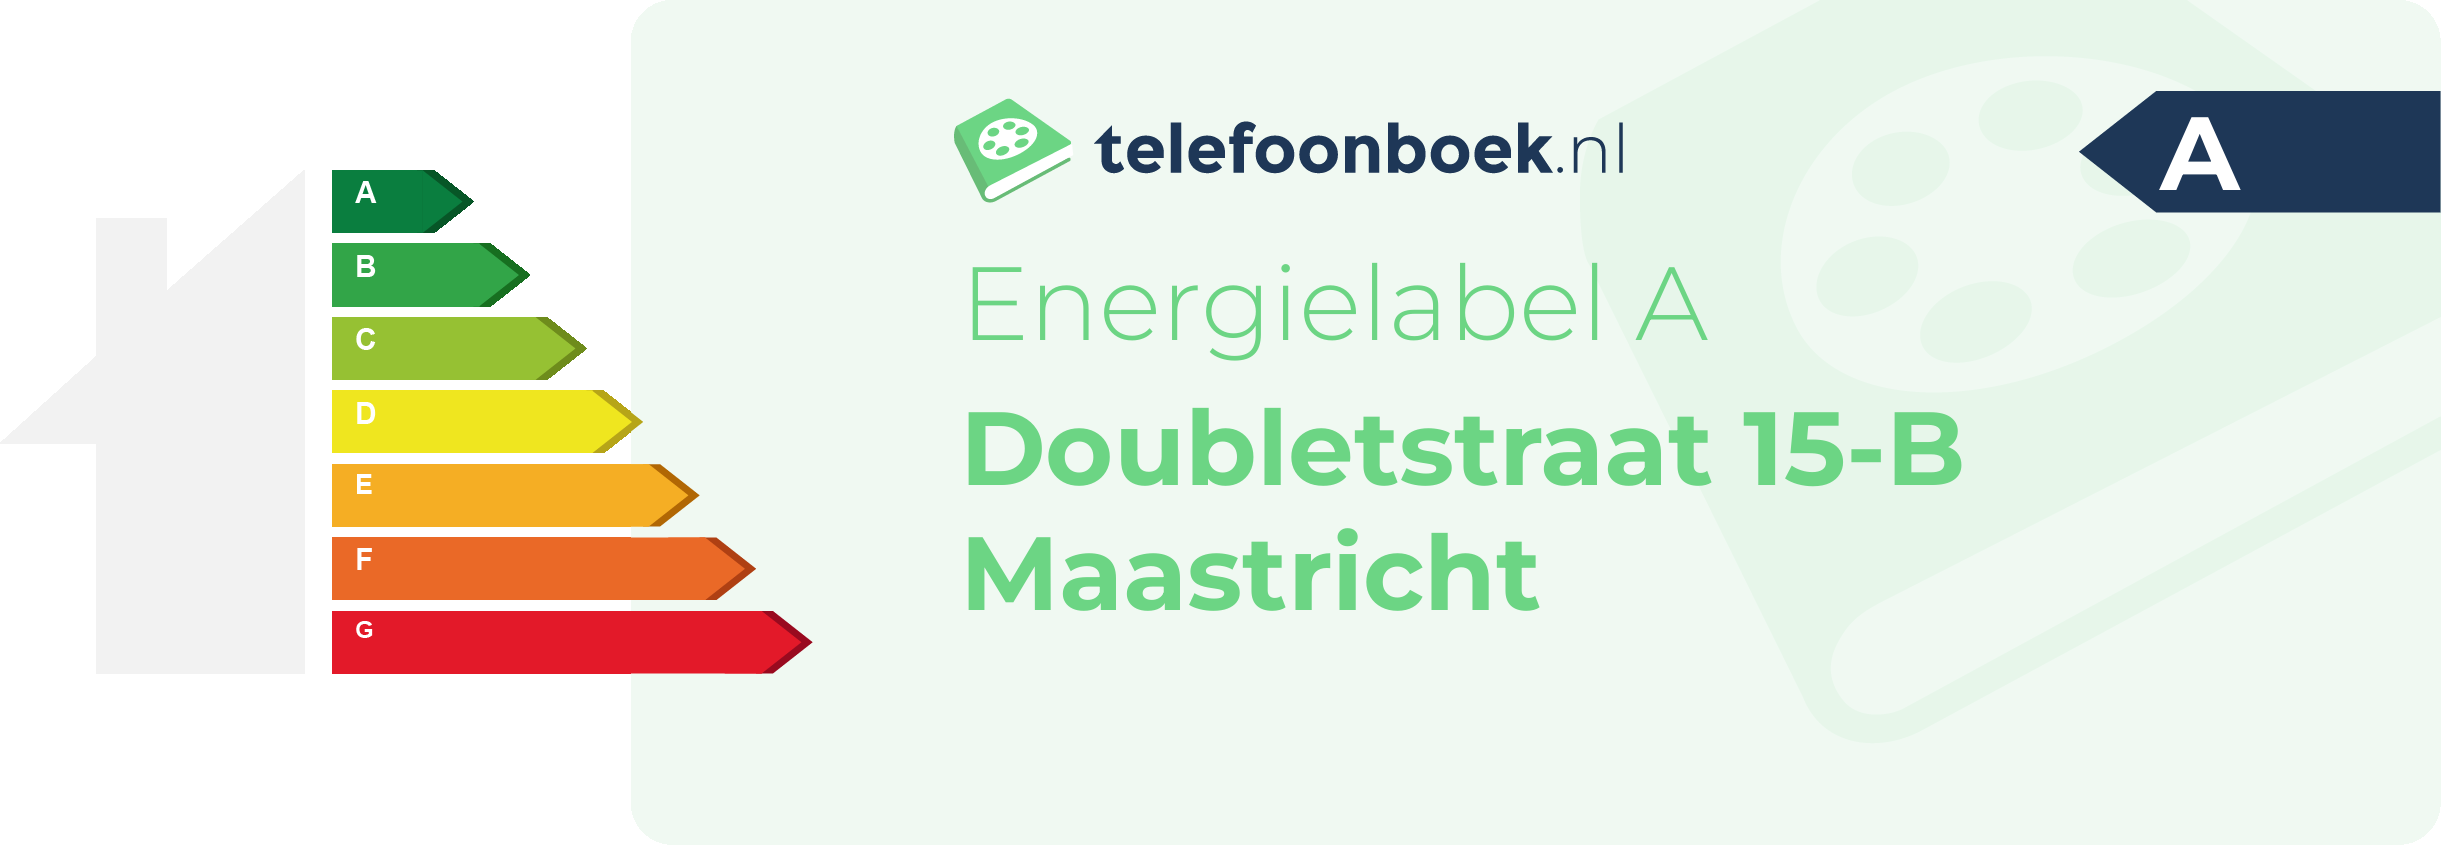 Energielabel Doubletstraat 15-B Maastricht